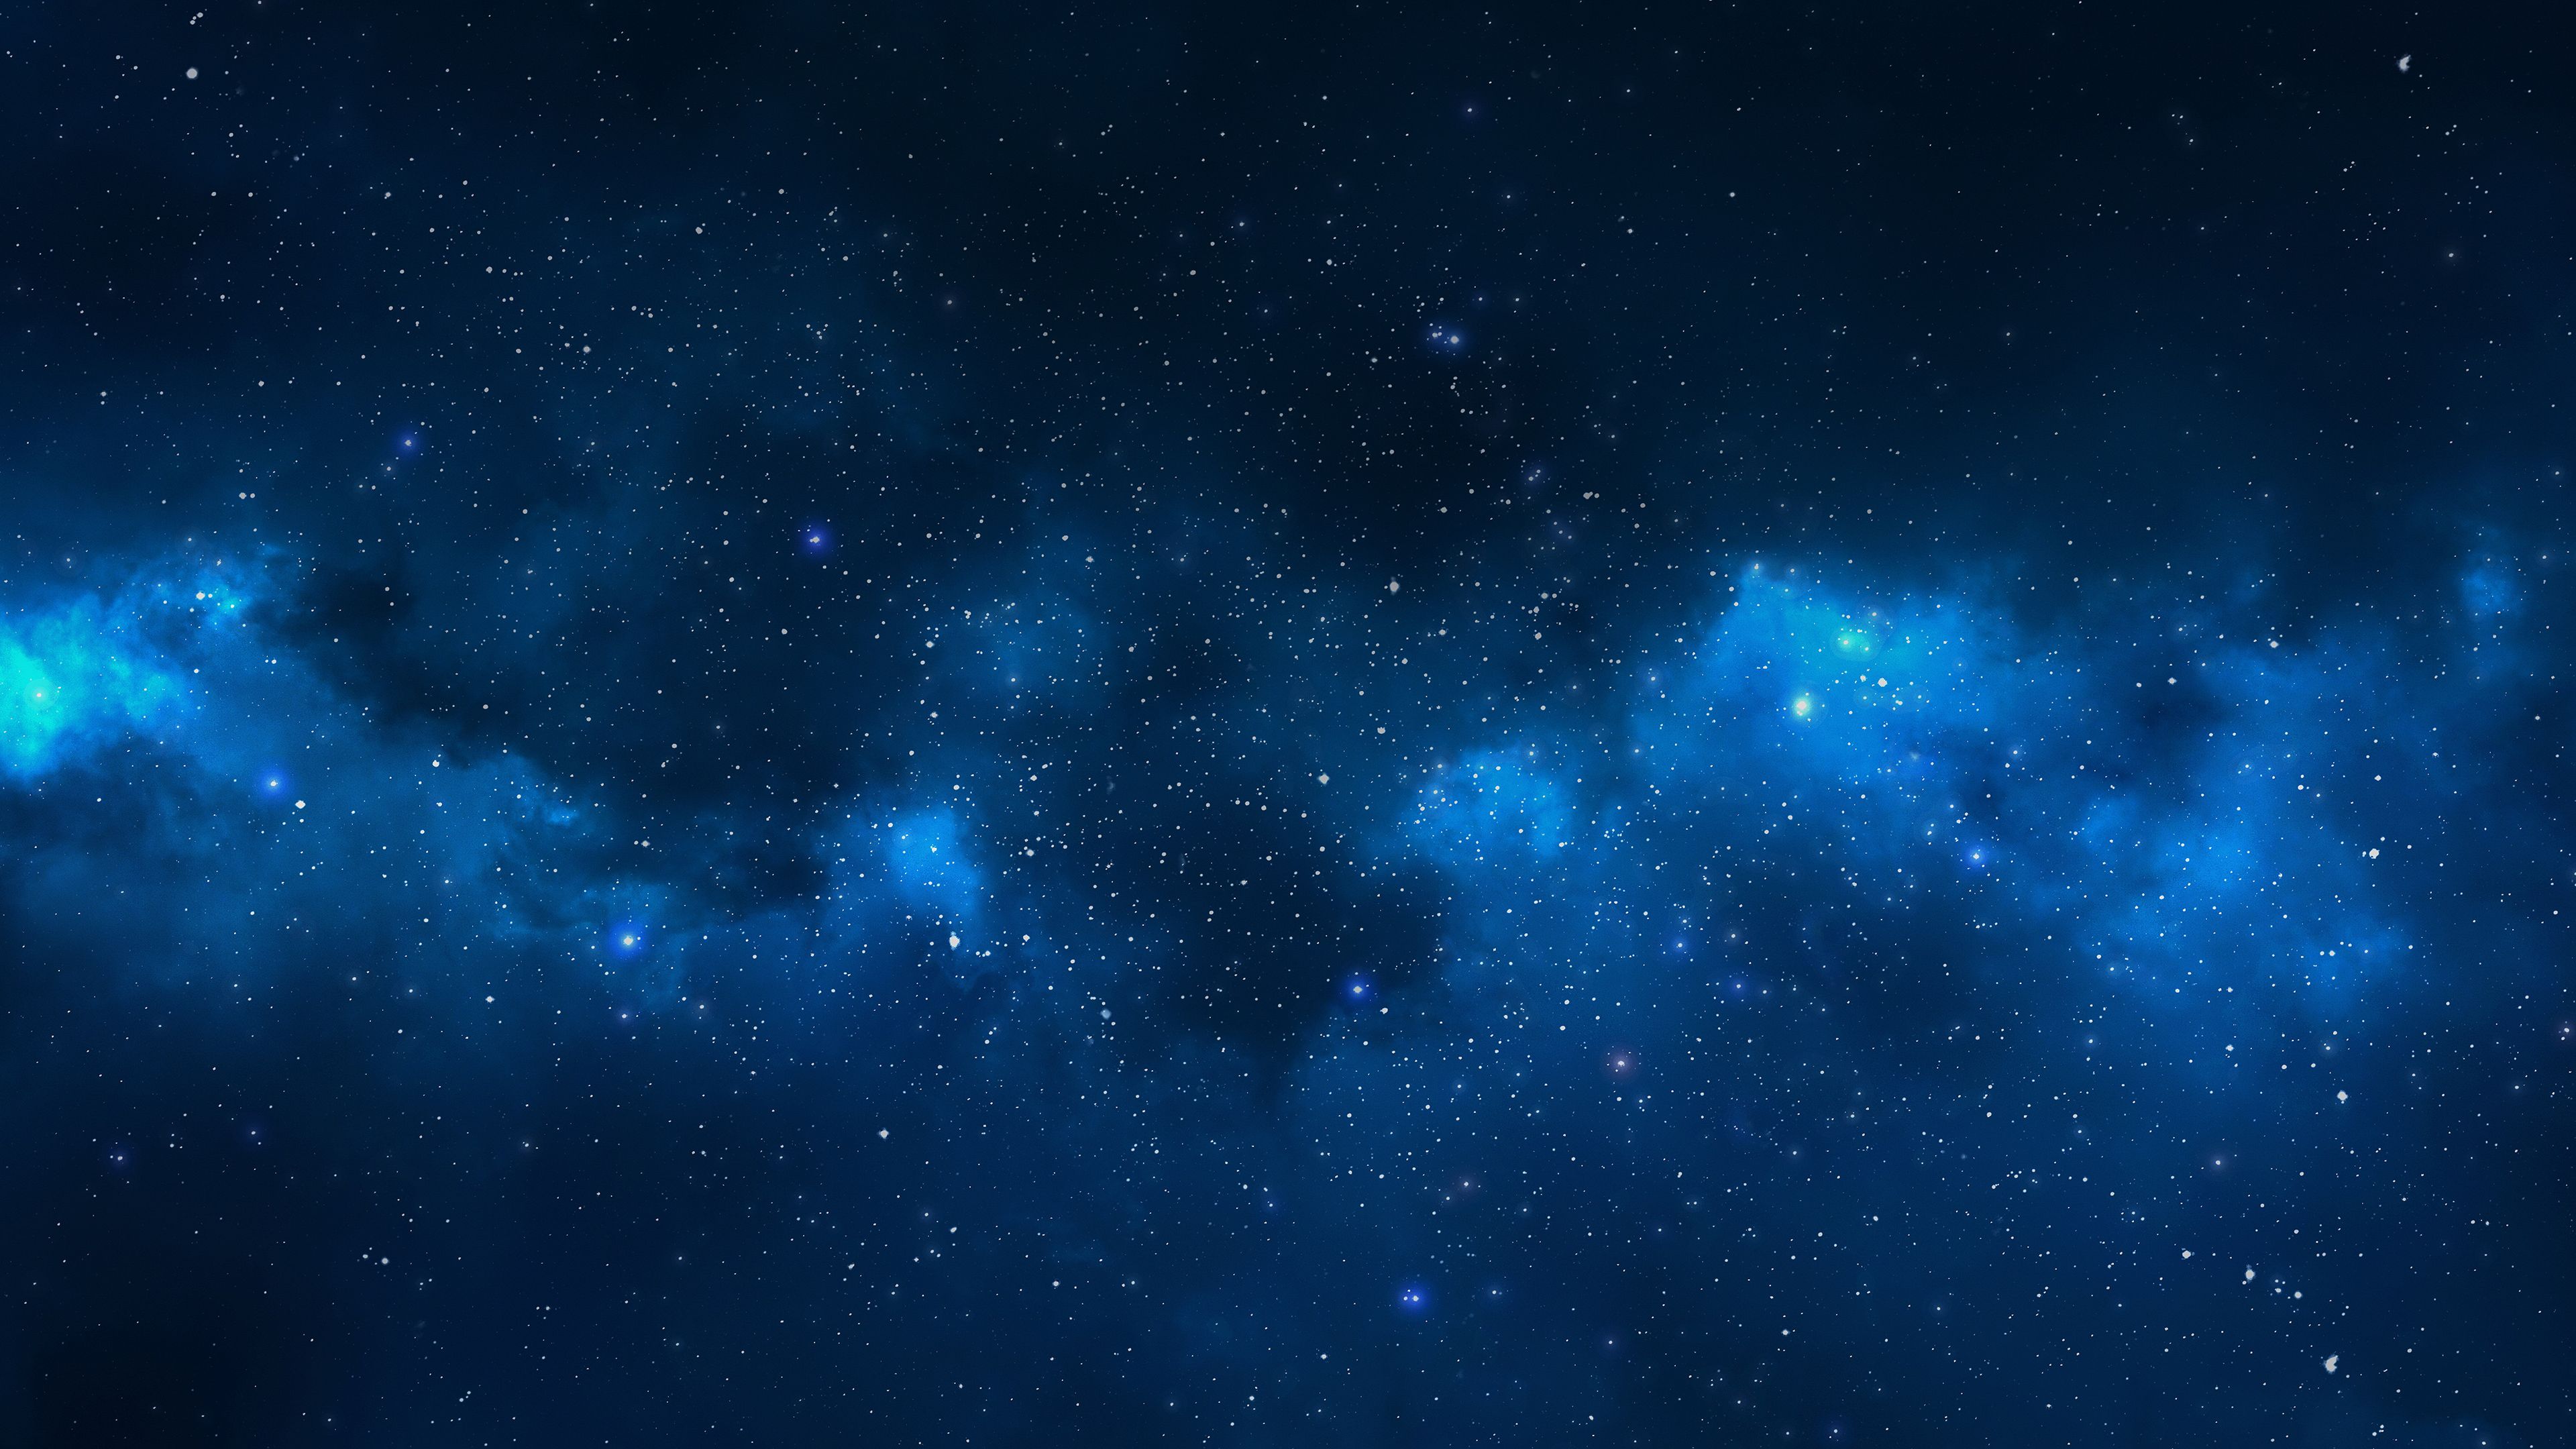 Hình nền Đại Ngân Hà xanh là một sự lựa chọn hoàn mỹ cho những người yêu thích vũ trụ và thiên nhiên. Với sự phối hợp tuyệt vời giữa màu xanh lấp lánh và các thiên thể quay quanh nhau, cho ra một sản phẩm độc đáo và cuốn hút. Hãy để hình nền Đại Ngân Hà xanh giúp bạn thư giãn và tìm lại sự cân bằng trong cuộc sống.